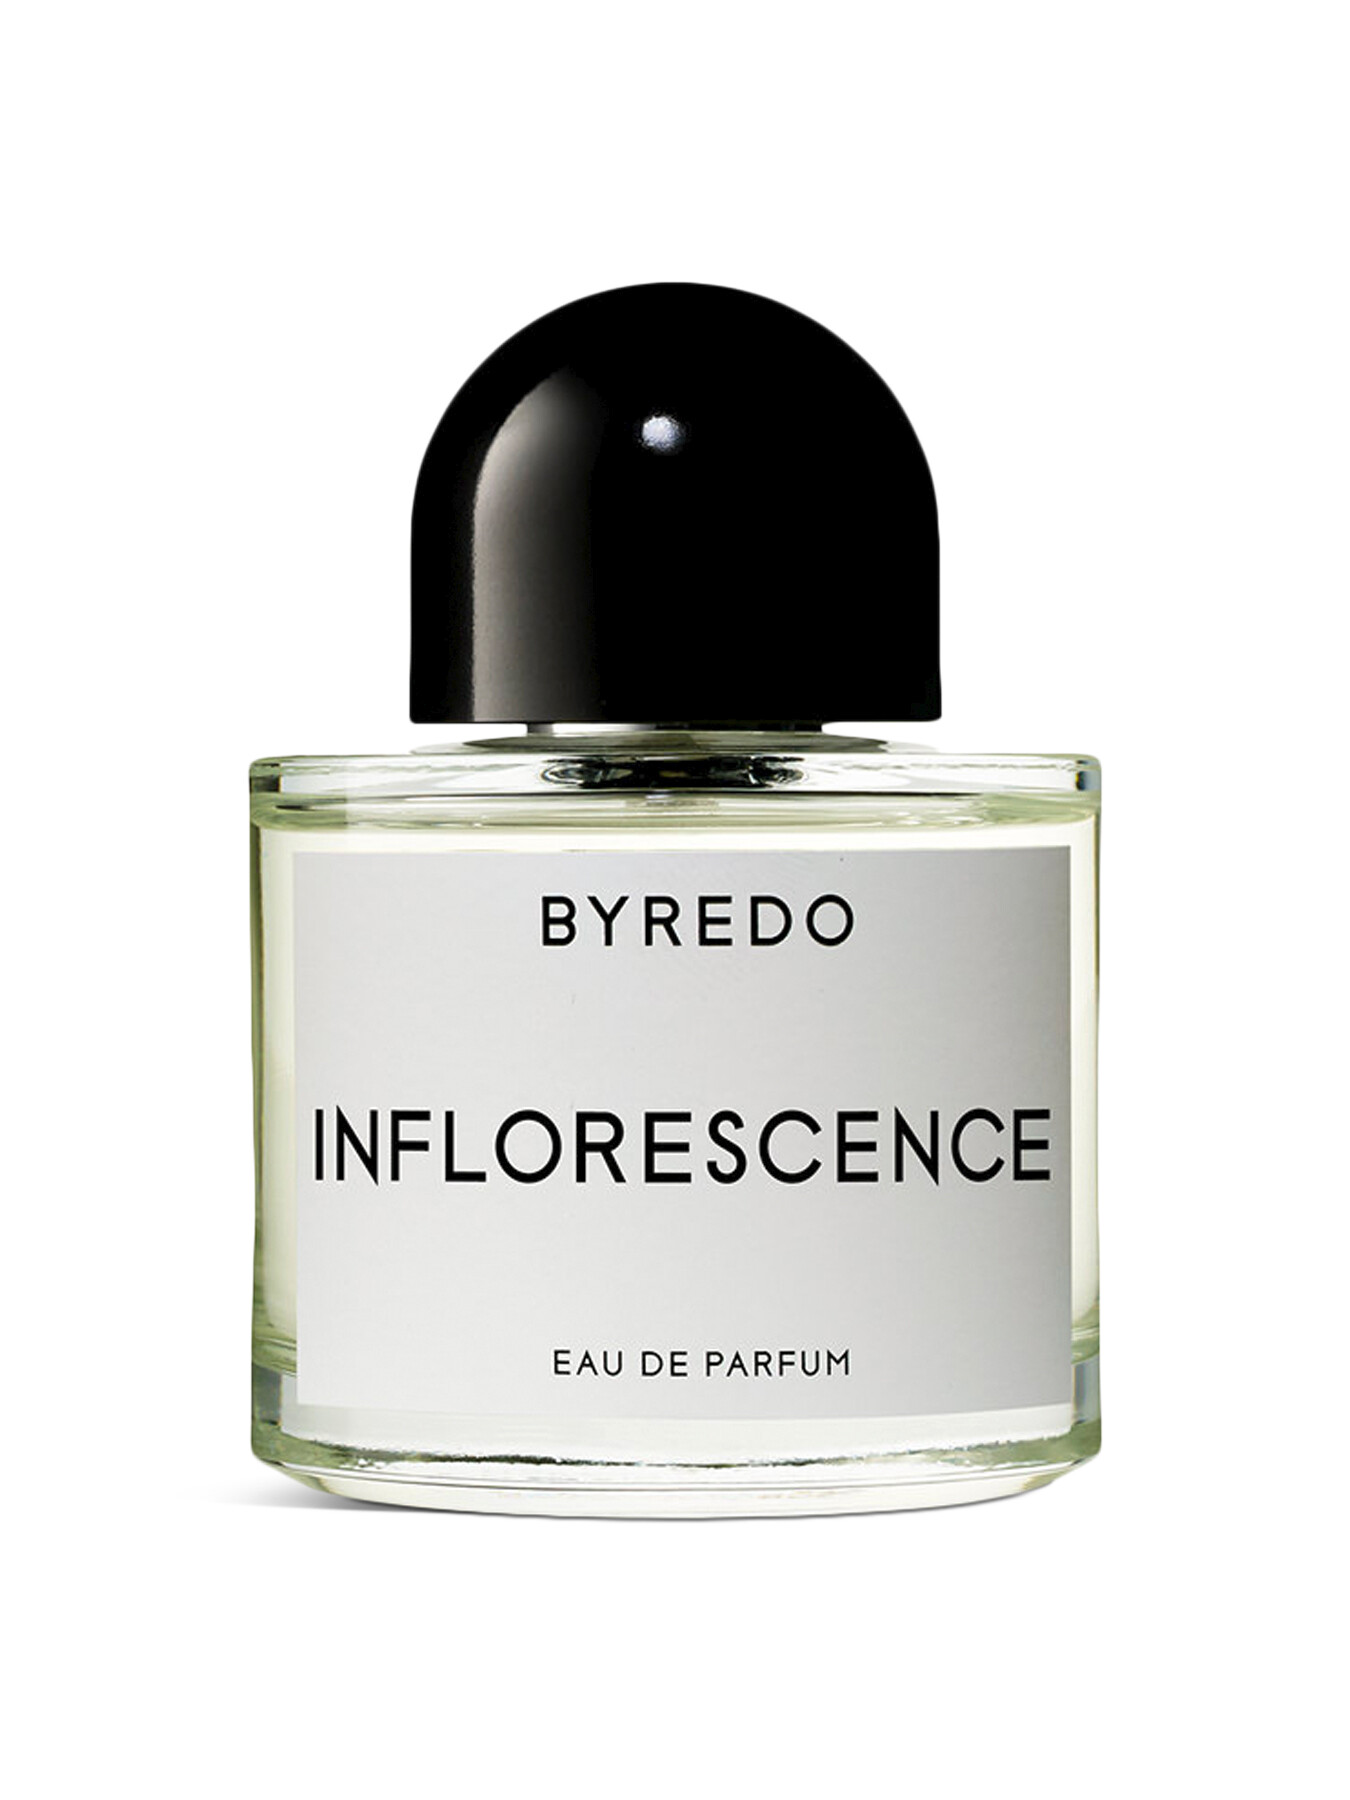 Byredo Inflorescence Eau De Parfum 50ml